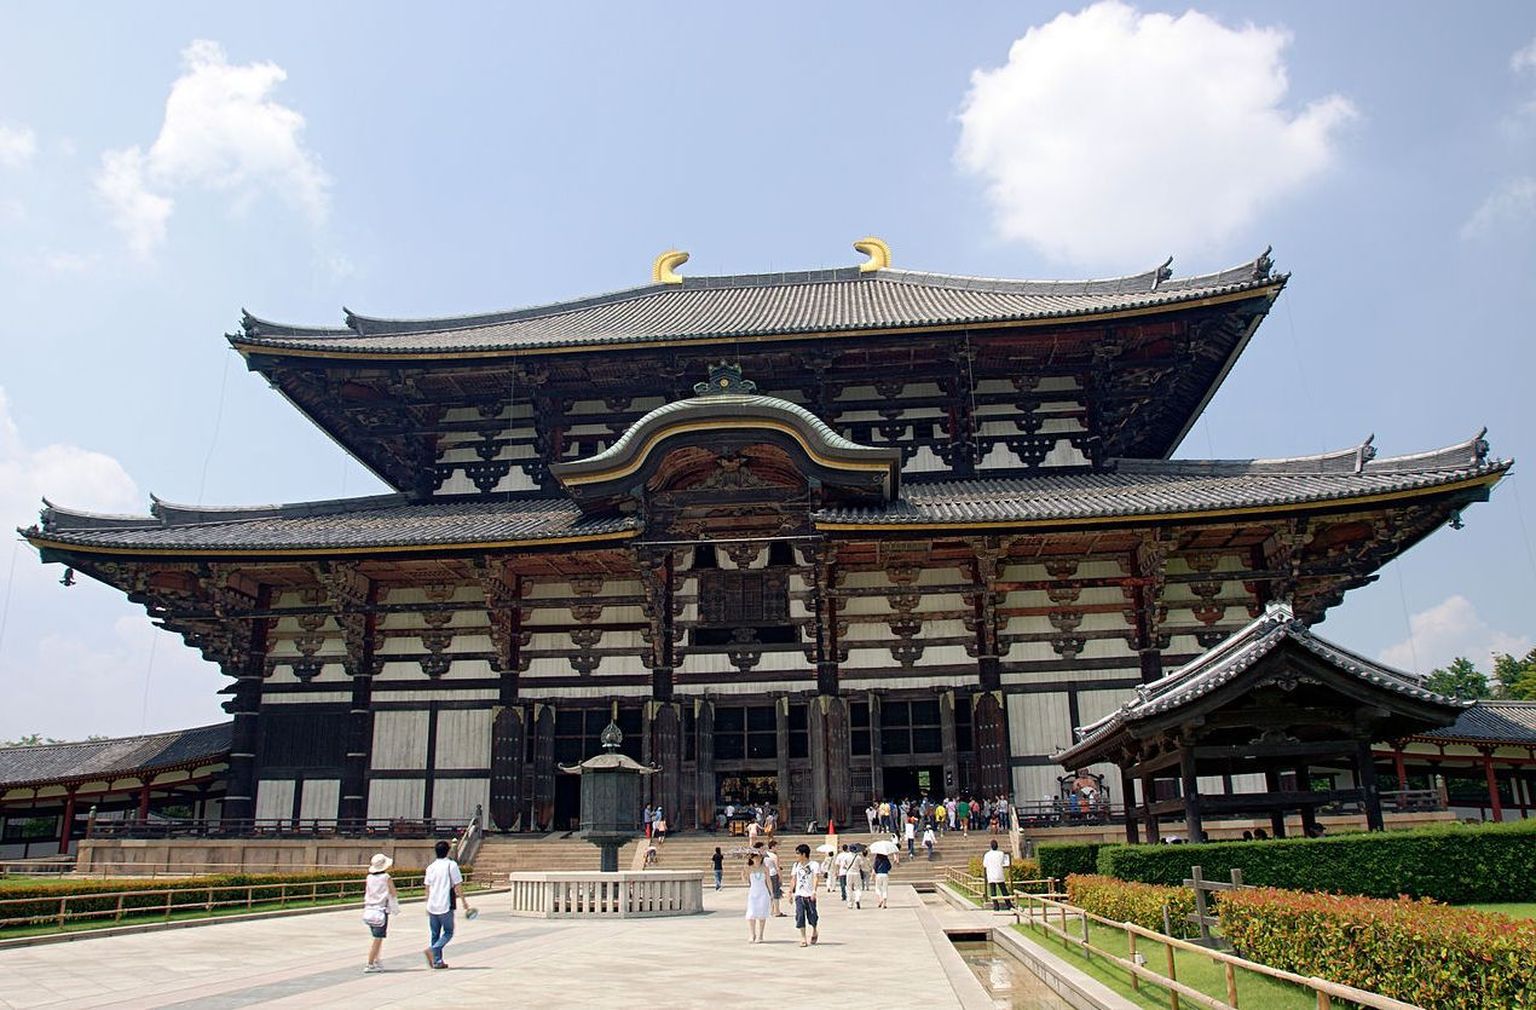 Jaapani Nara üks kuulsatest templitest on Todai-ji tempel, mis on maailma suurim puitehitis